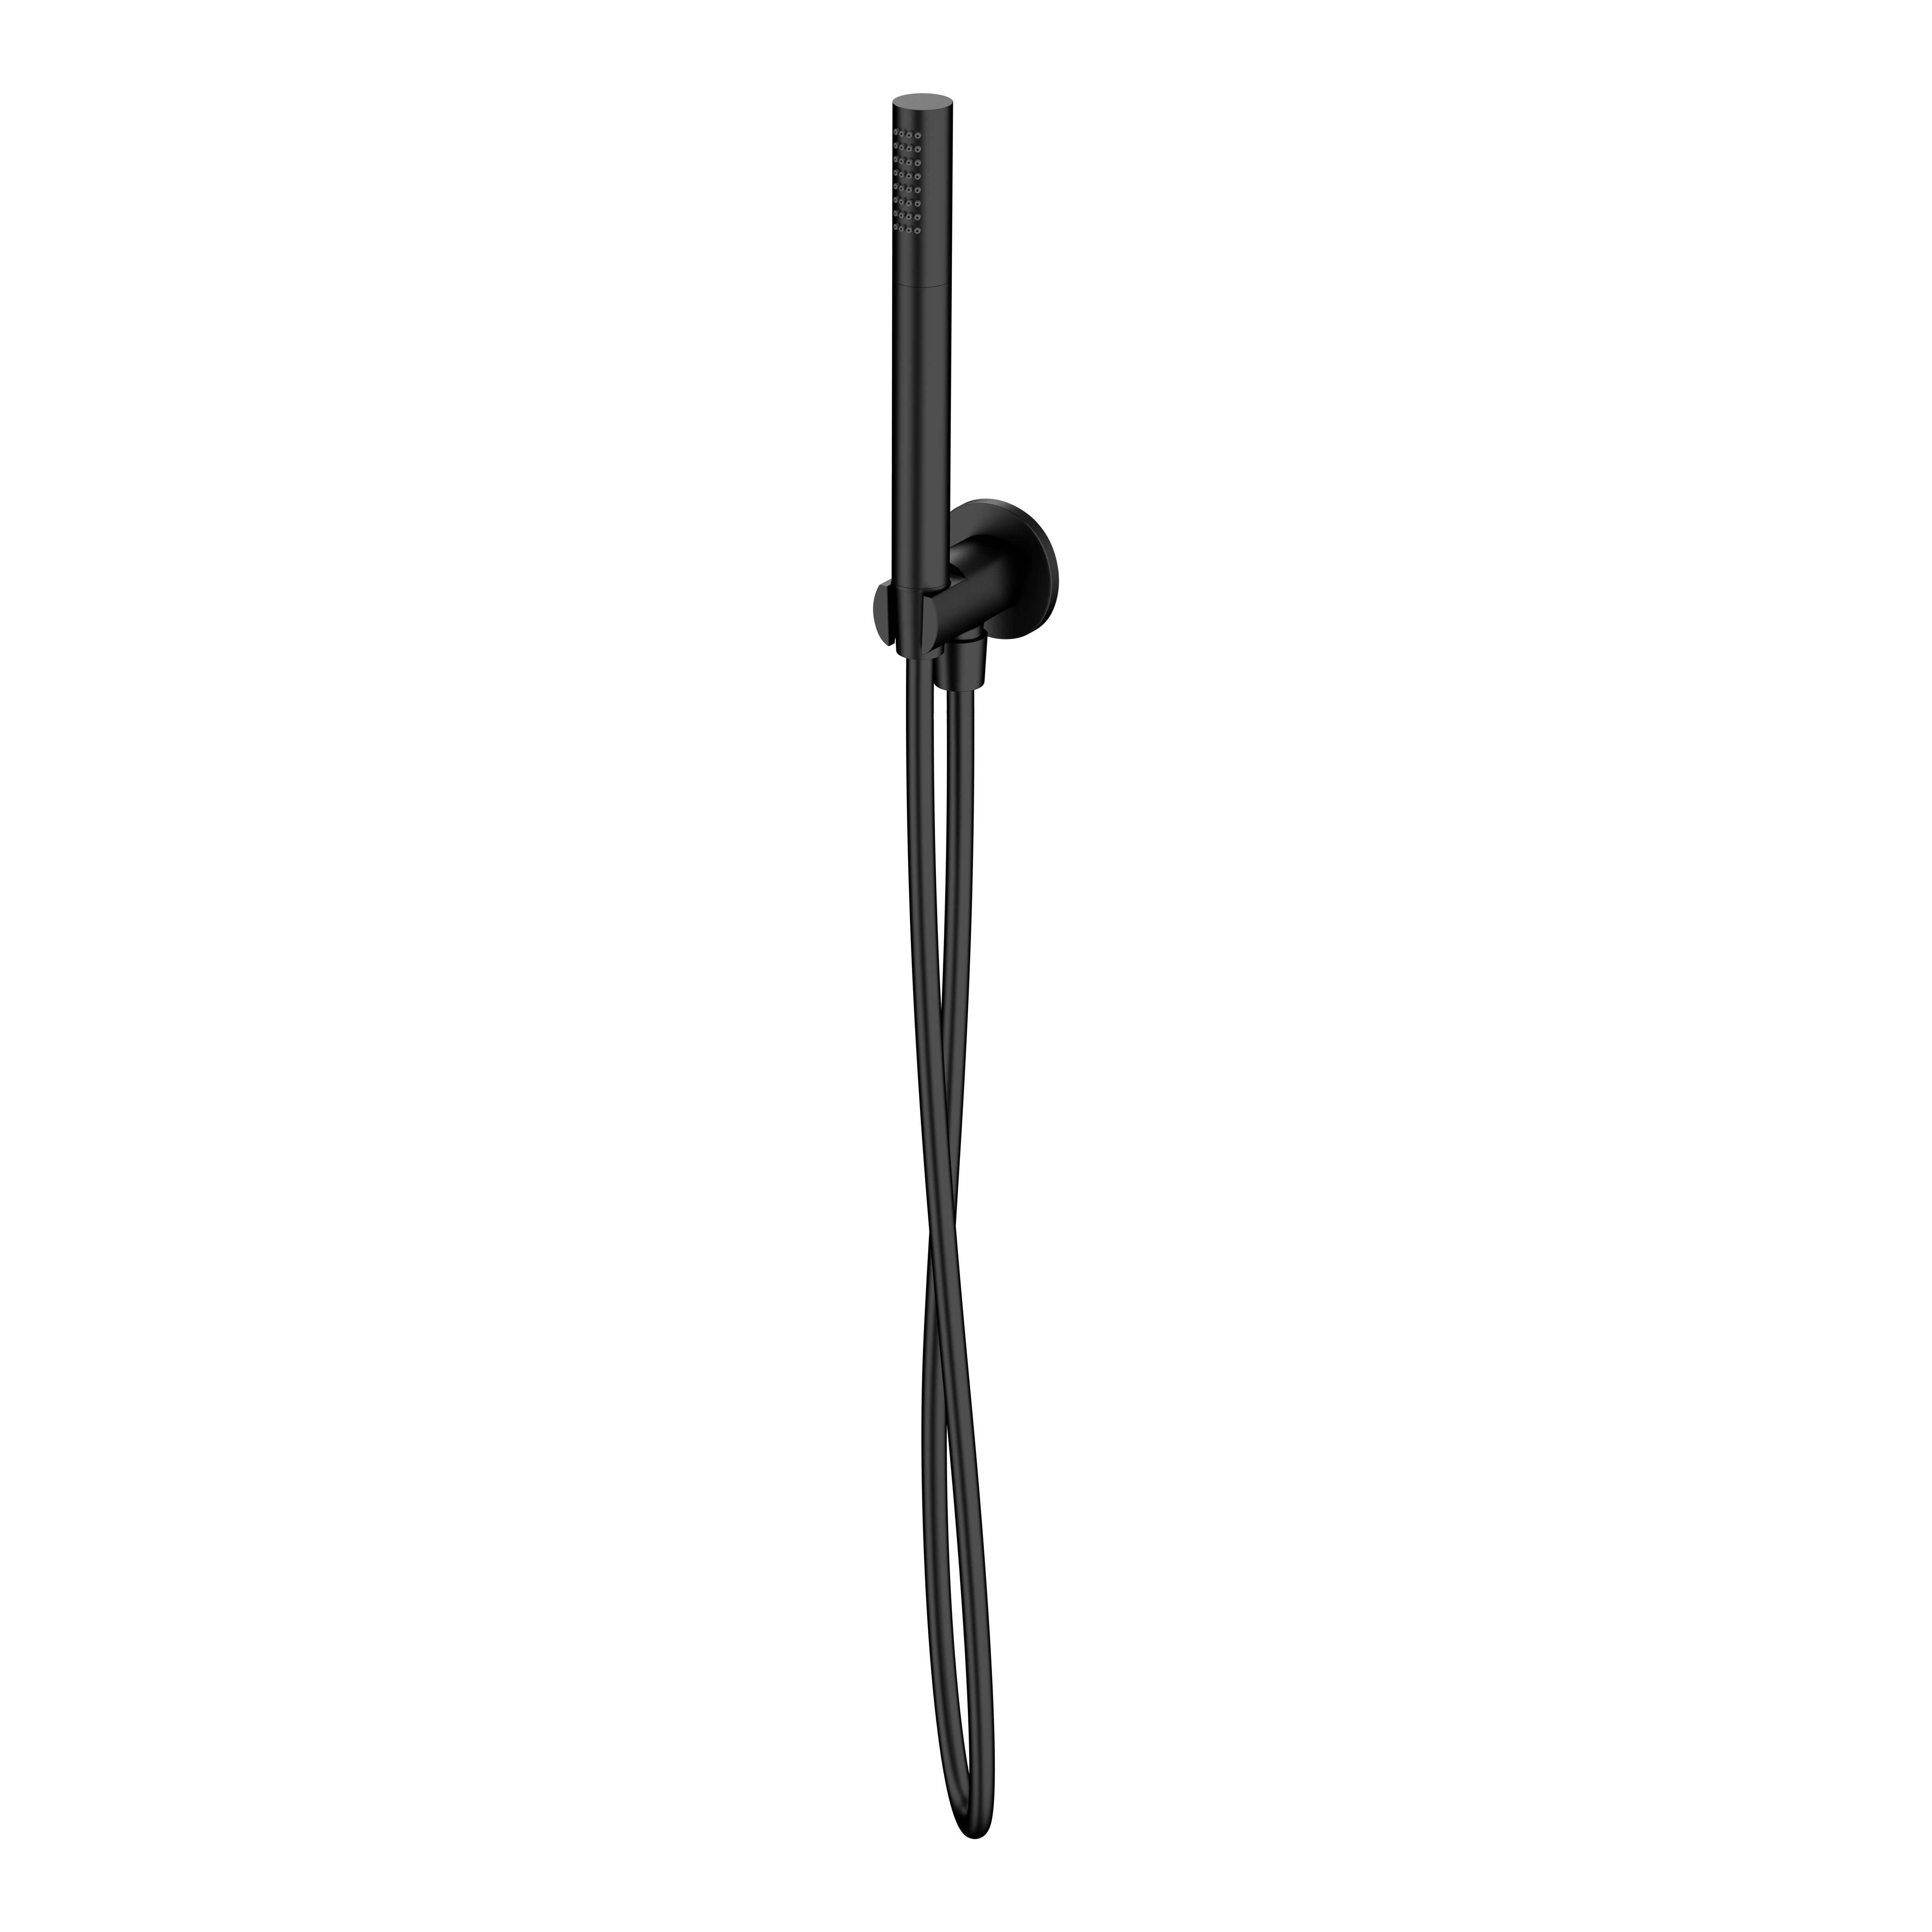 Zdjęcia - Zestaw prysznicowy Cersanit  punktowy  Inverto czarny mat S951-709 